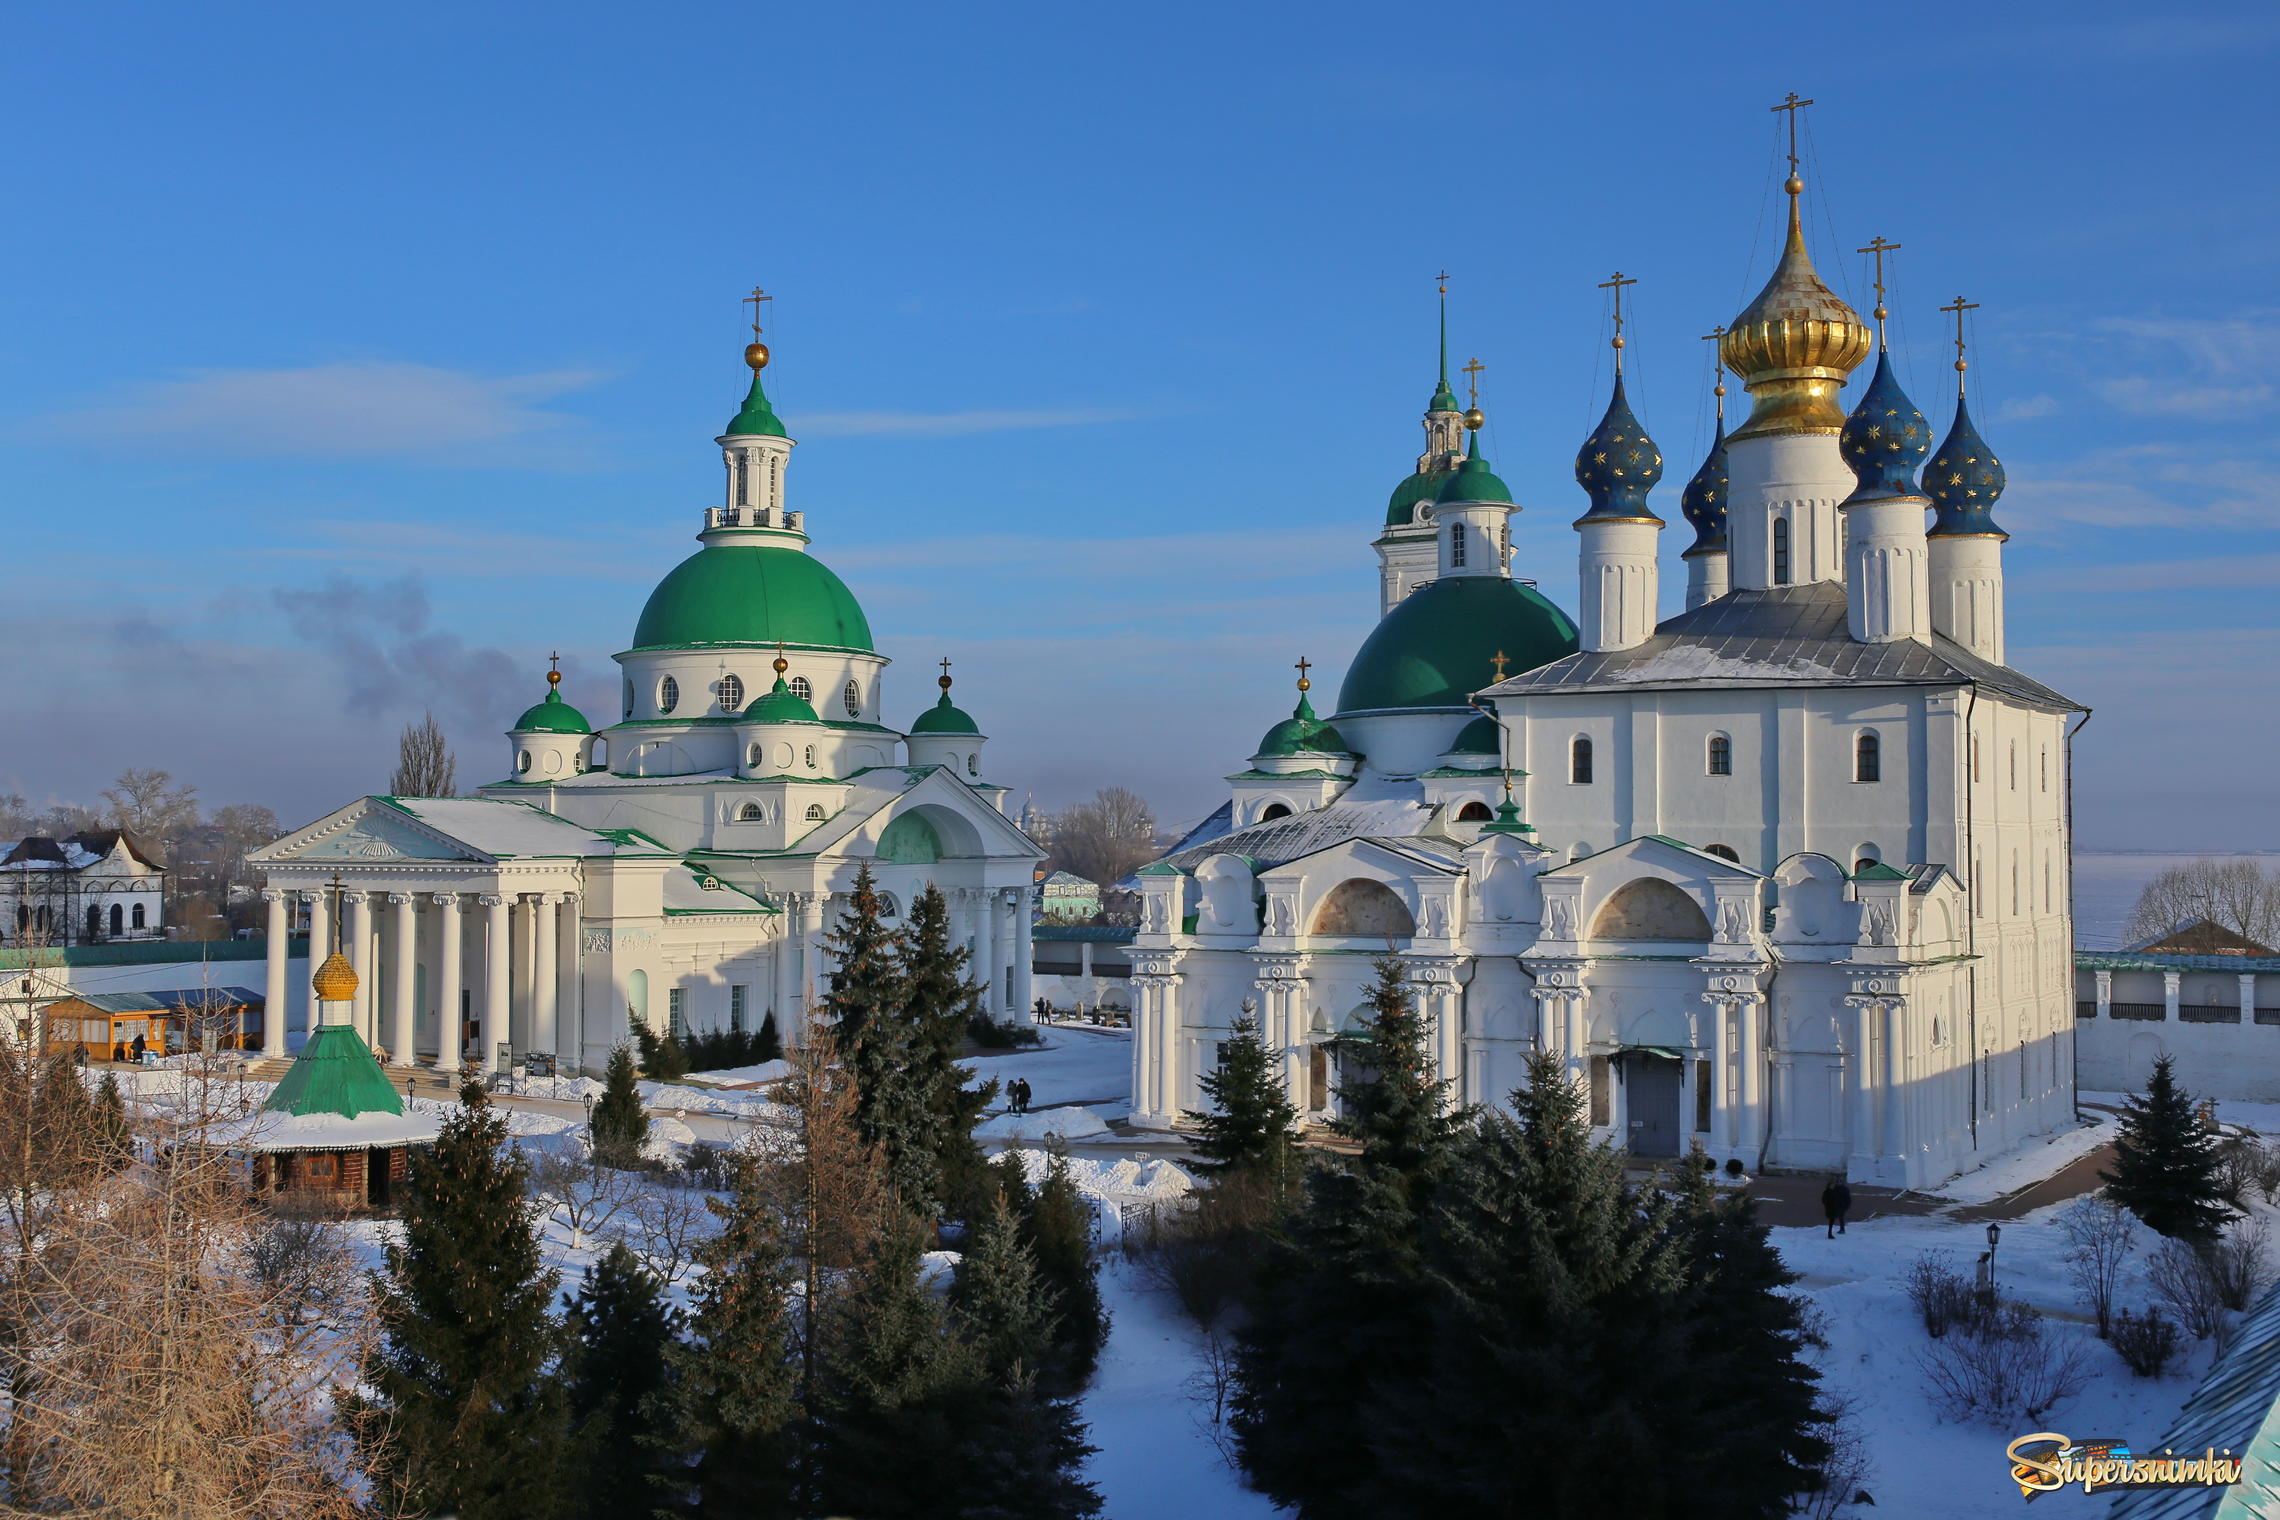  Спасо-Яковлевский монастырь 